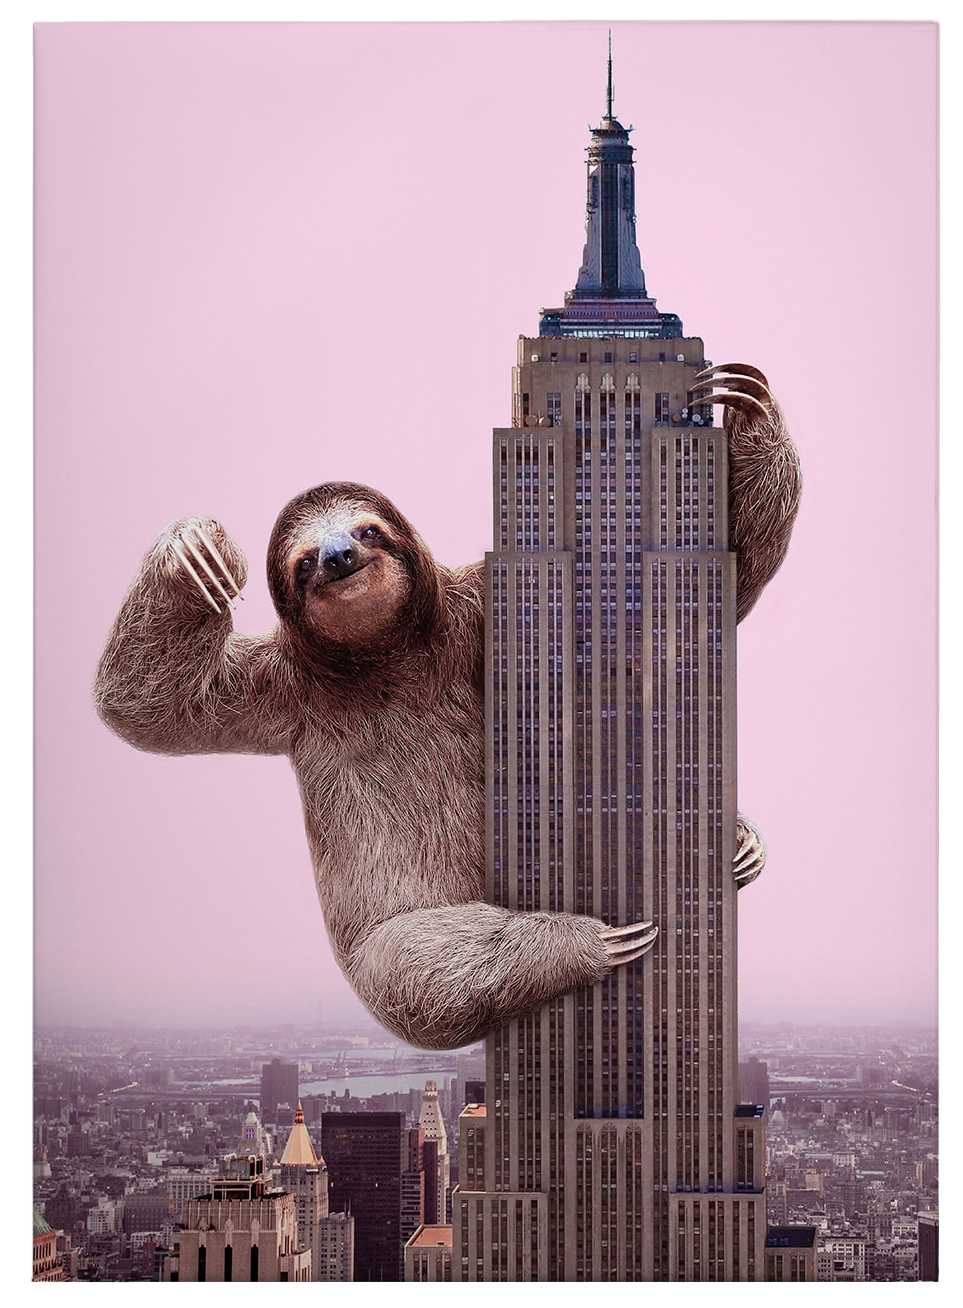             Leinwandbild Faultier von Fuentes, "King Sloth" – 0,50 m x 0,70 m
        